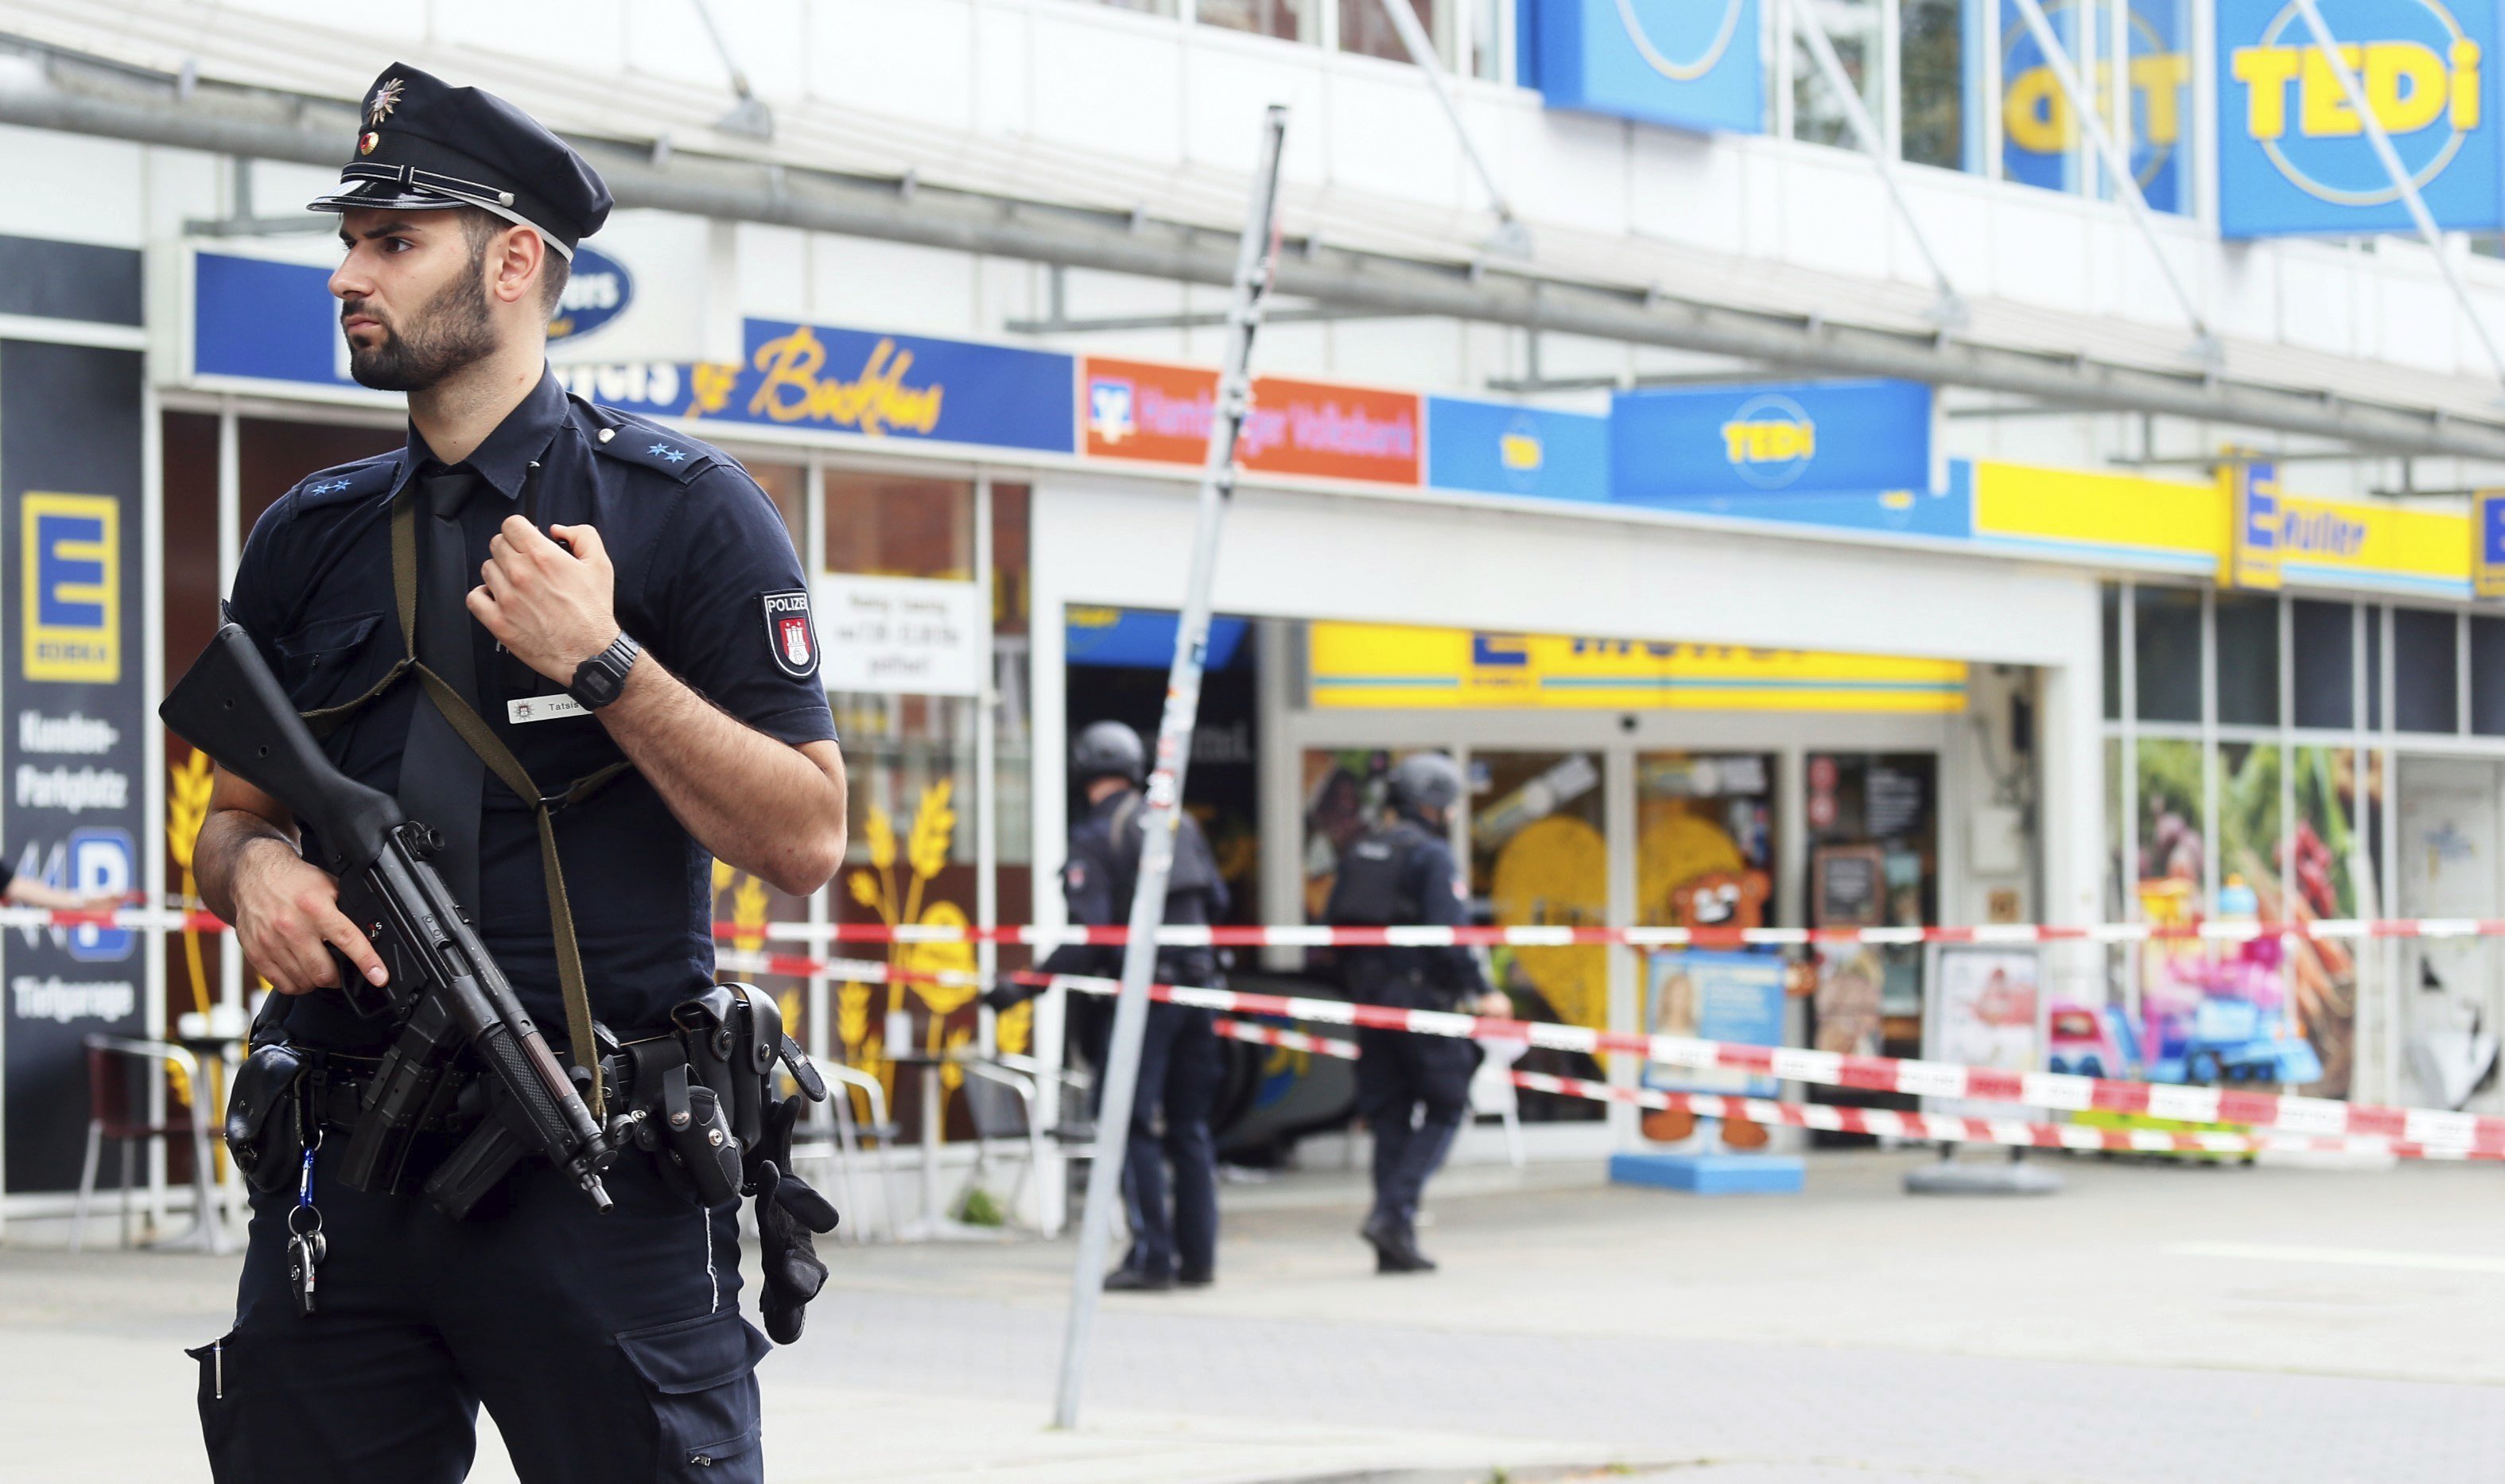 L’atacant del supermercat d’Hamburg era un “islamista amb problemes psicològics”